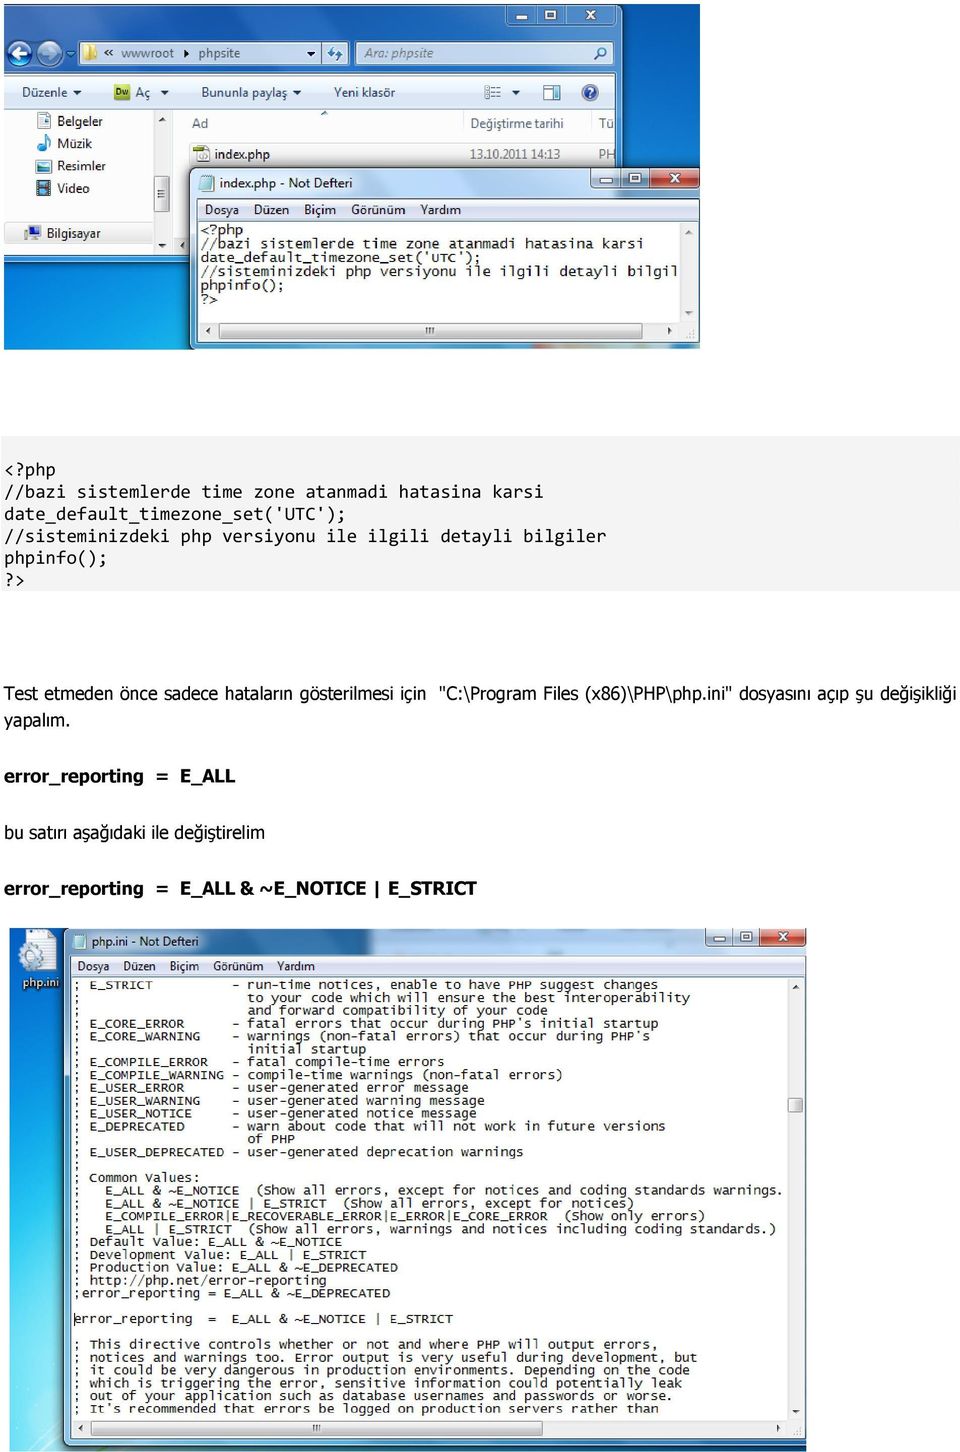 > Test etmeden önce sadece hataların gösterilmesi için "C:\Program Files (x86)\php\php.